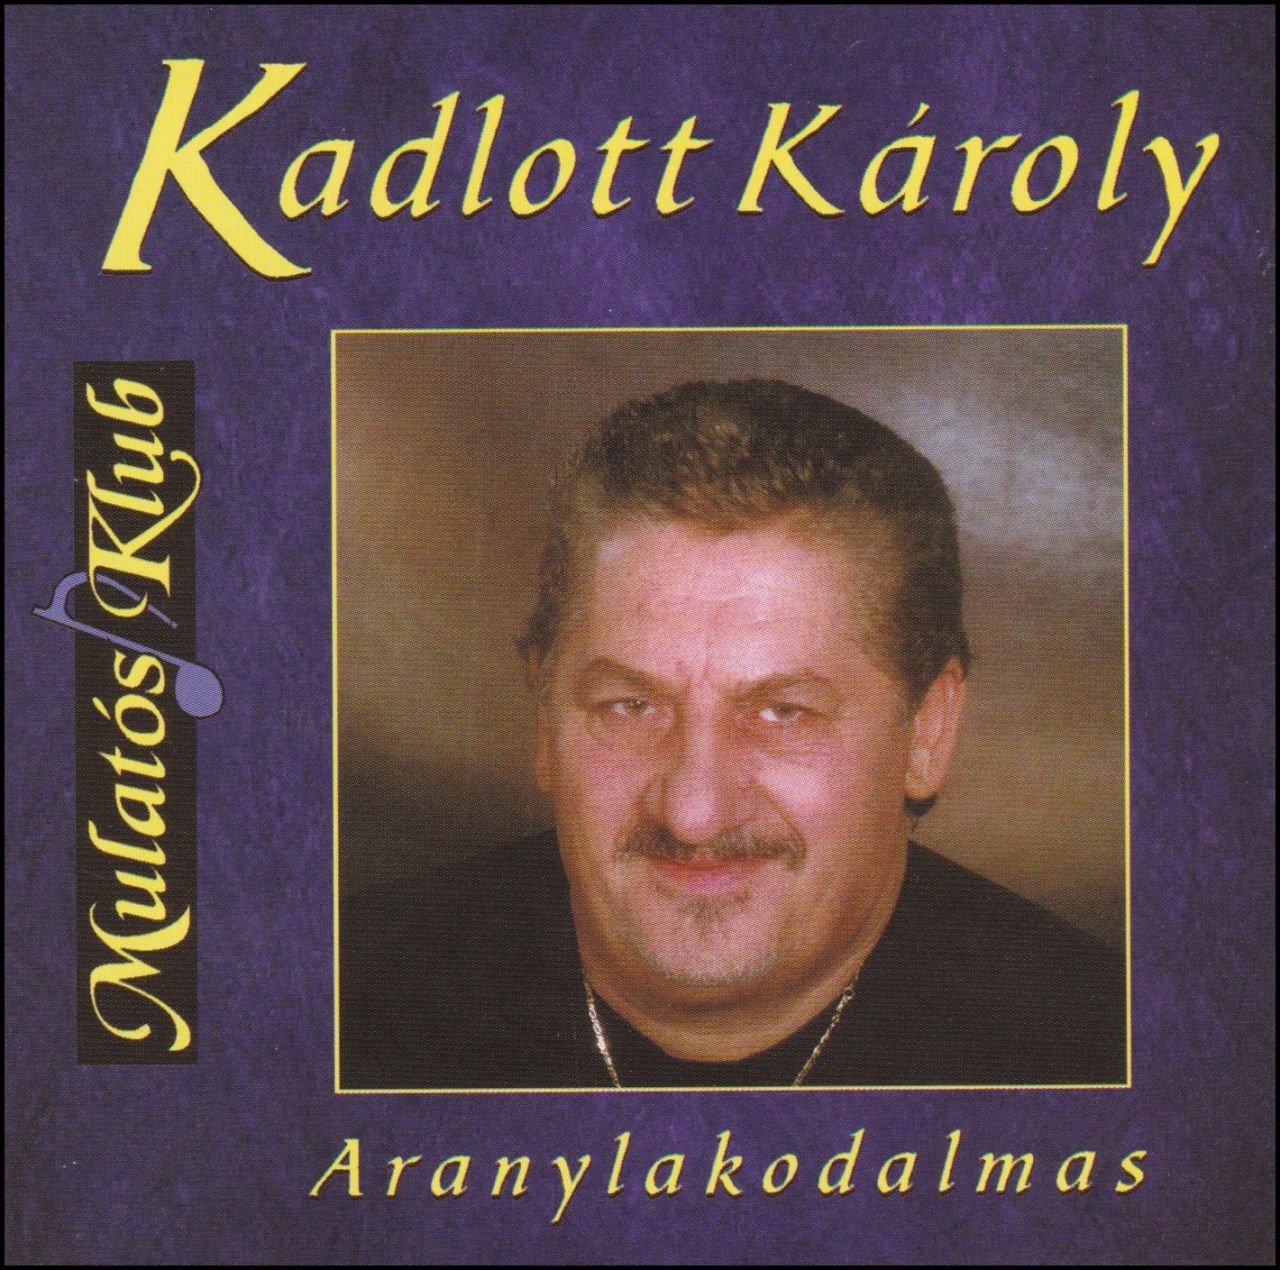 Kadlott Károly: Aranylakodalmas (CD)